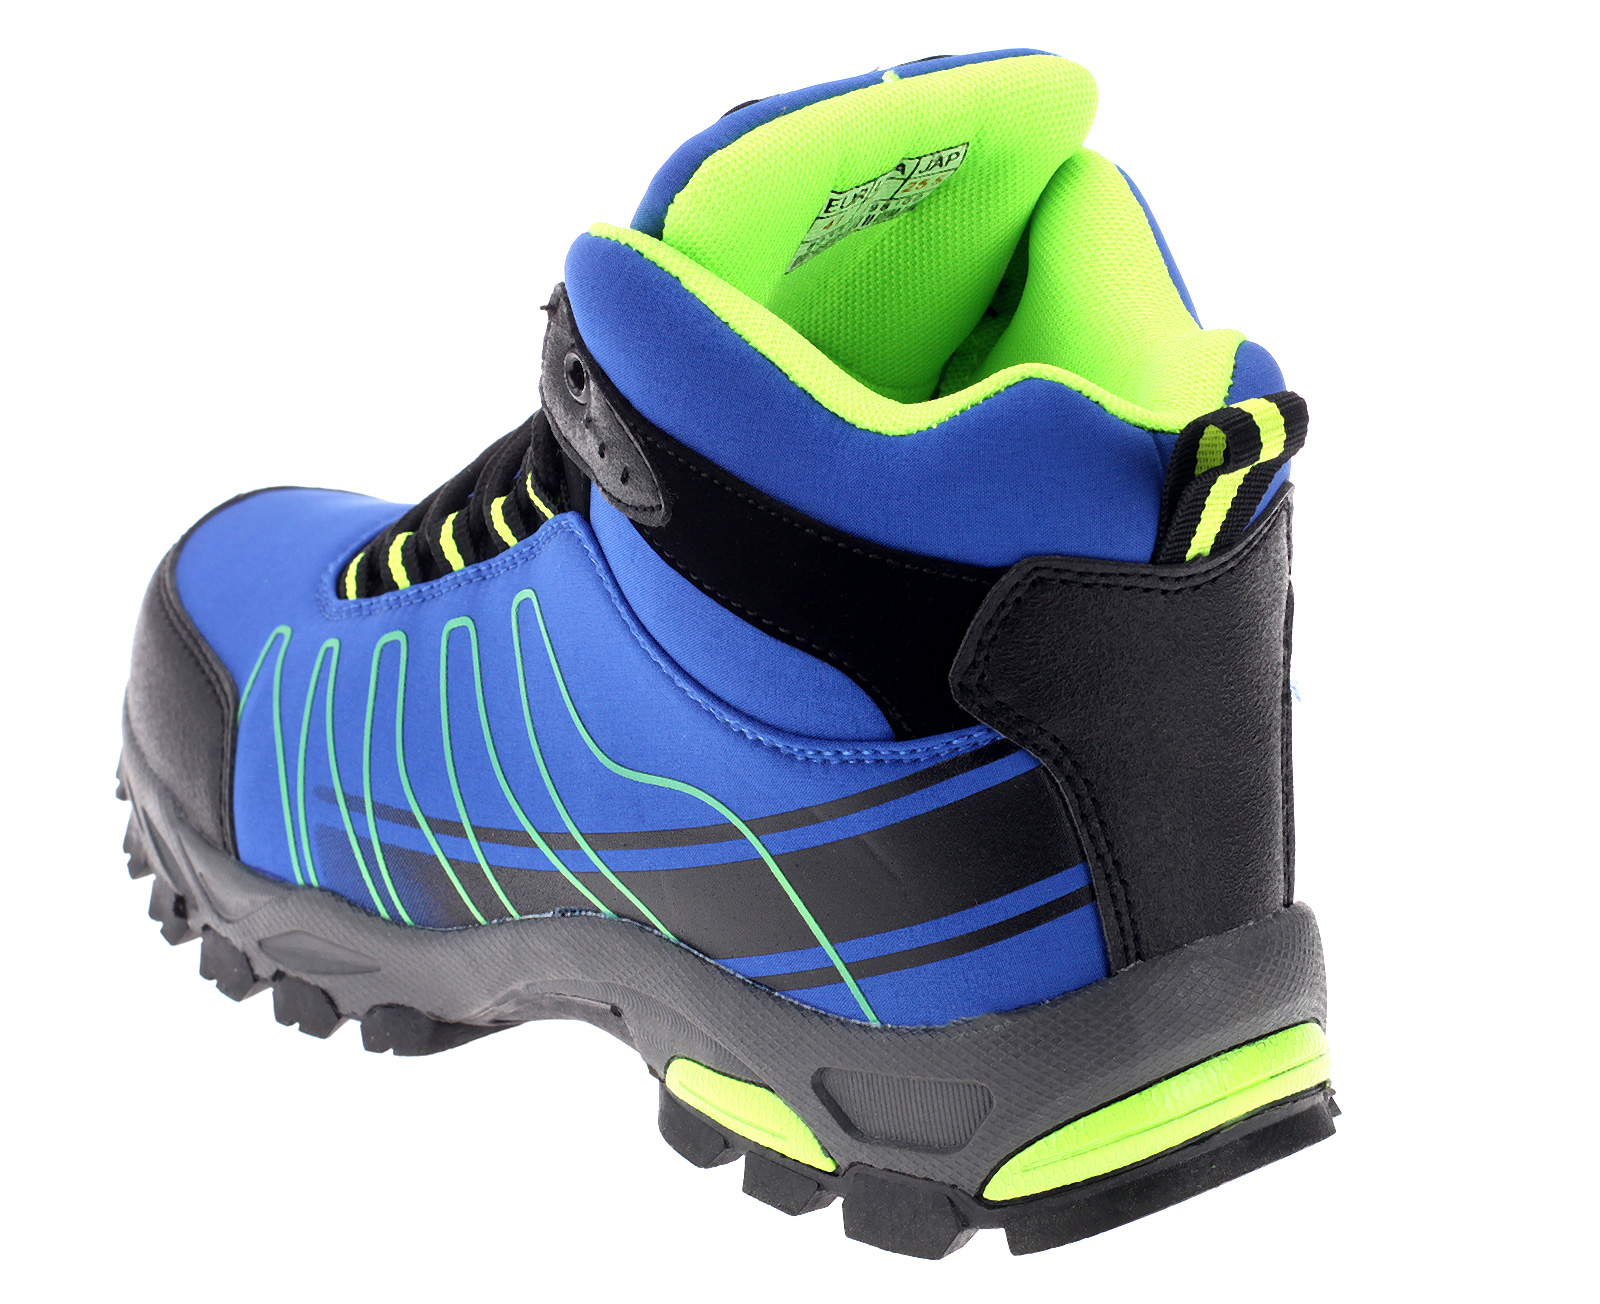 Wanderschuhe Outdoor Stiefel Trekkingschuhe Boots Freizeit Sneaker Schuhe 1530